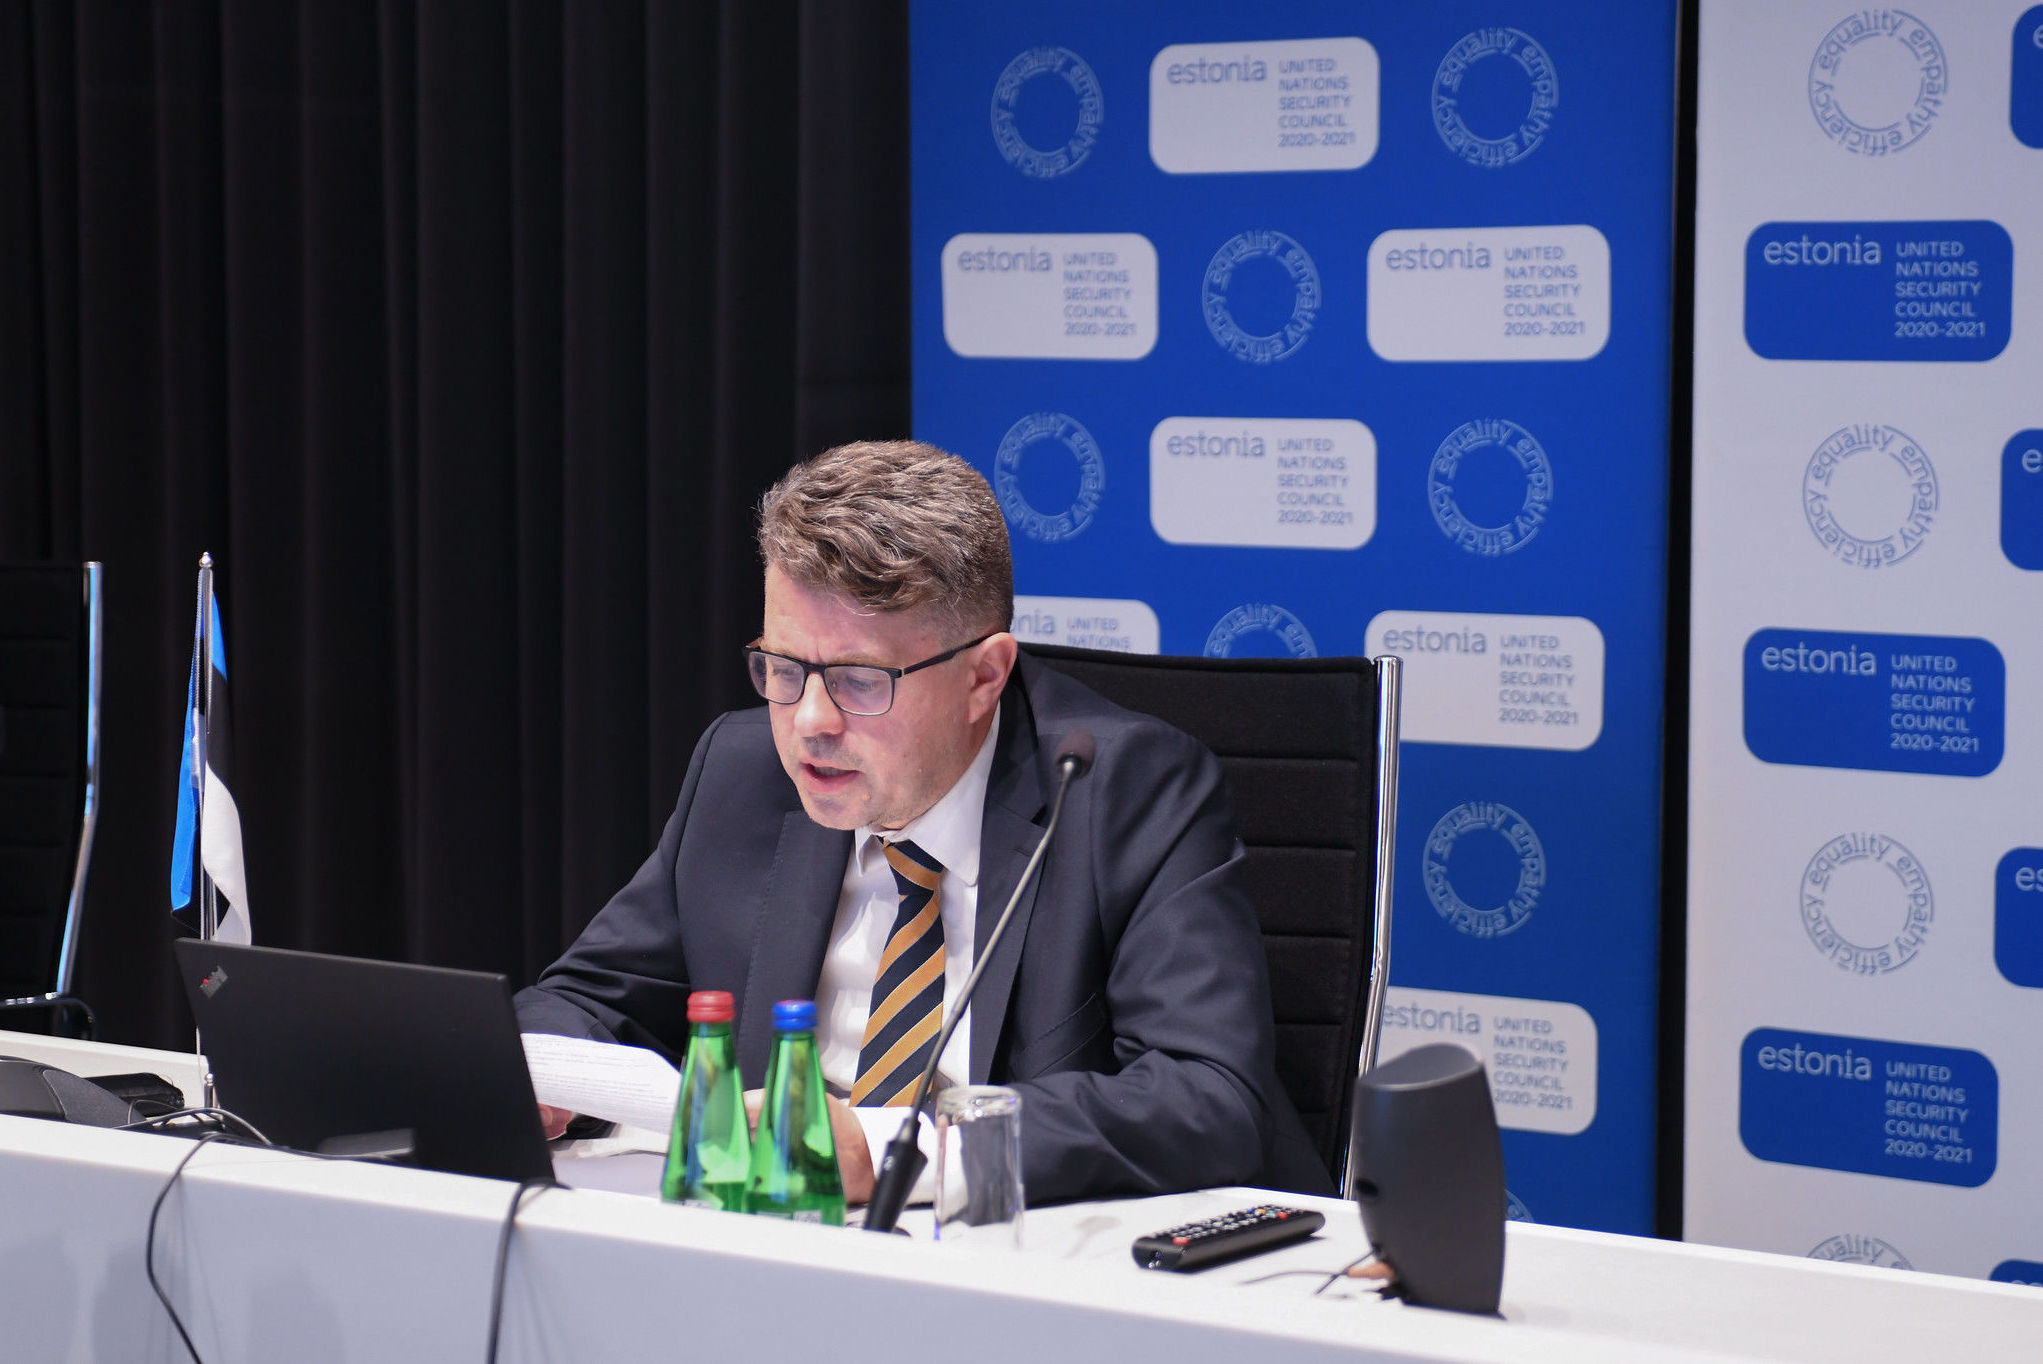 Министр иностранных дел Эстонии Урмас Рейнсалу во время обсуждения ситуация в Белоруссии в Совете Безопасности ООН под эгидой Эстонии и США